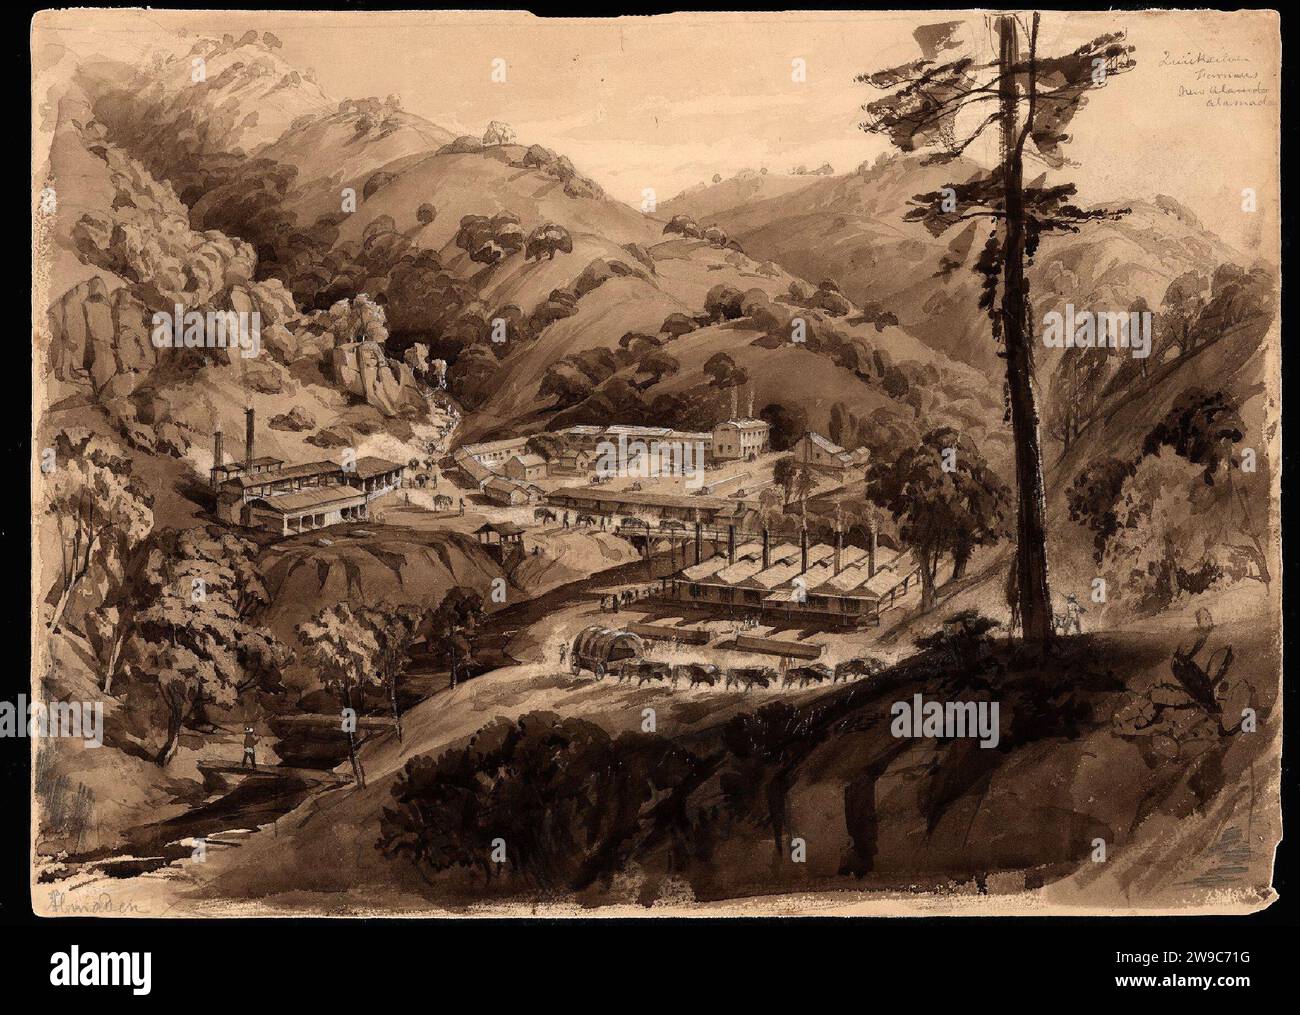 watercolour of the New Almaden Quicksilver Mine in California, USA, Stock Photo